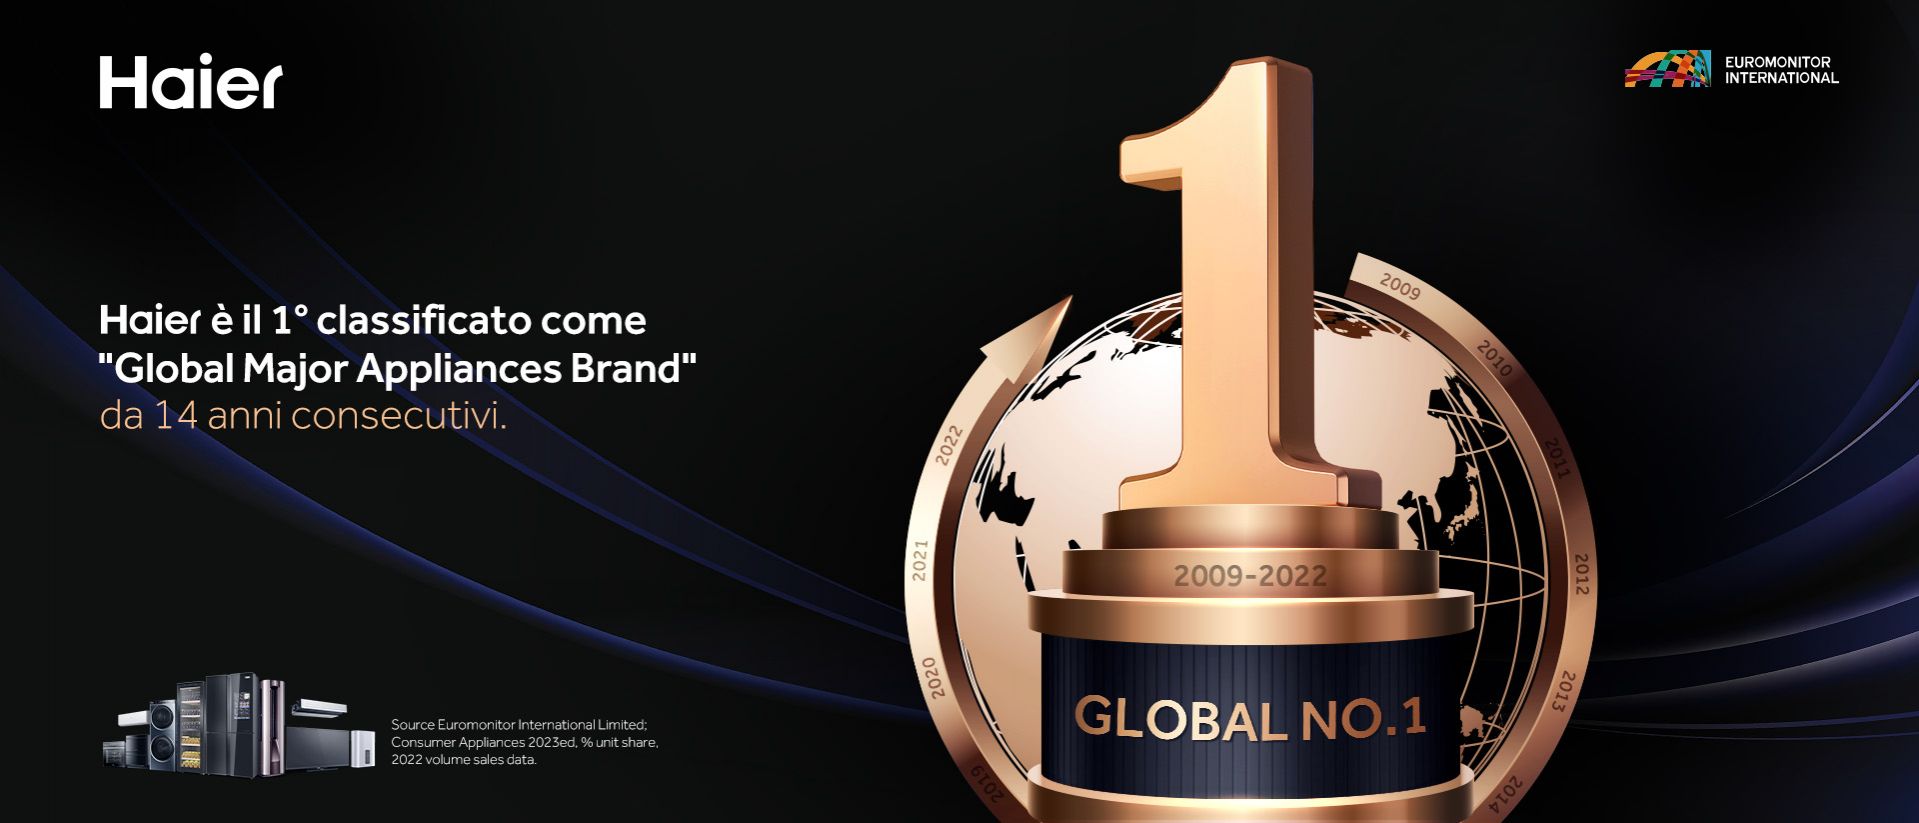 Haier è il 1° classificato come "global major appliances brand" da 14 anni consecutivi